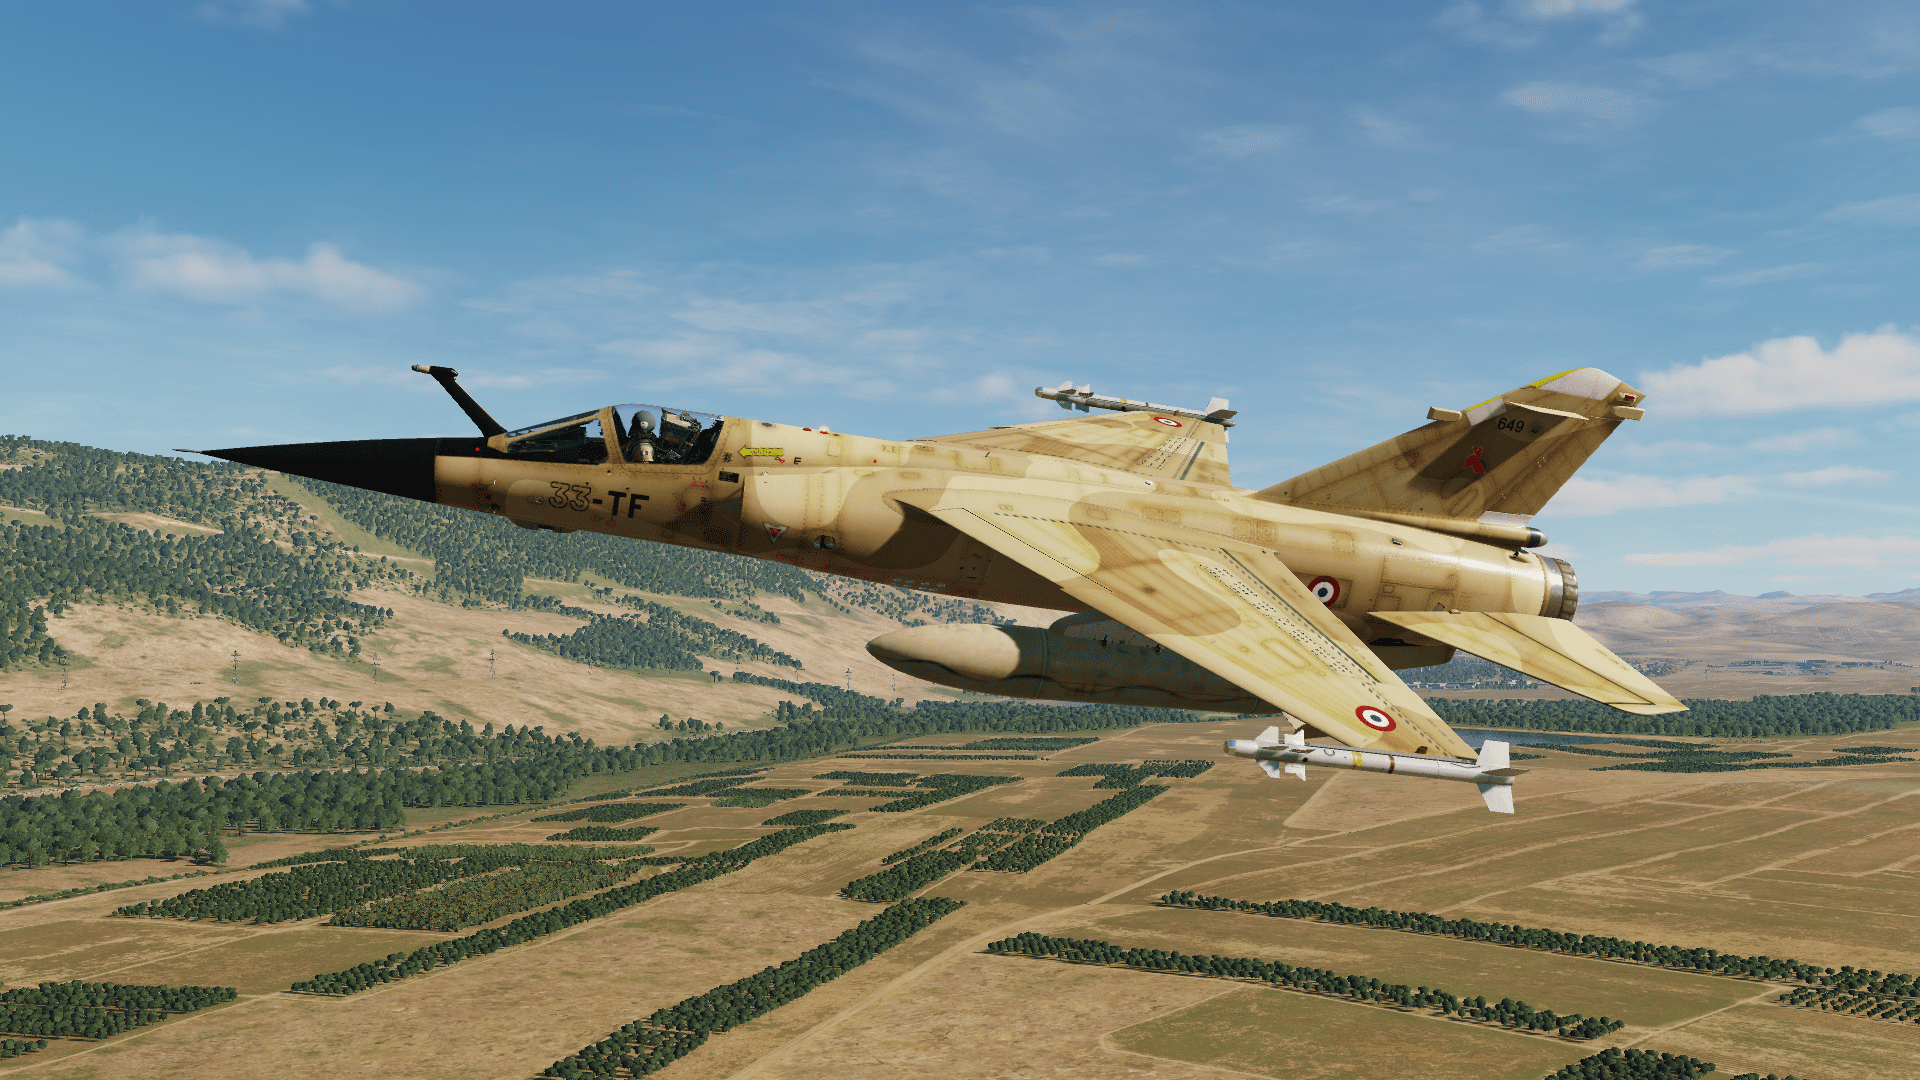 Mirage F1CR  ER 2/33 "Savoie", Operation Aconit, Irak 1991